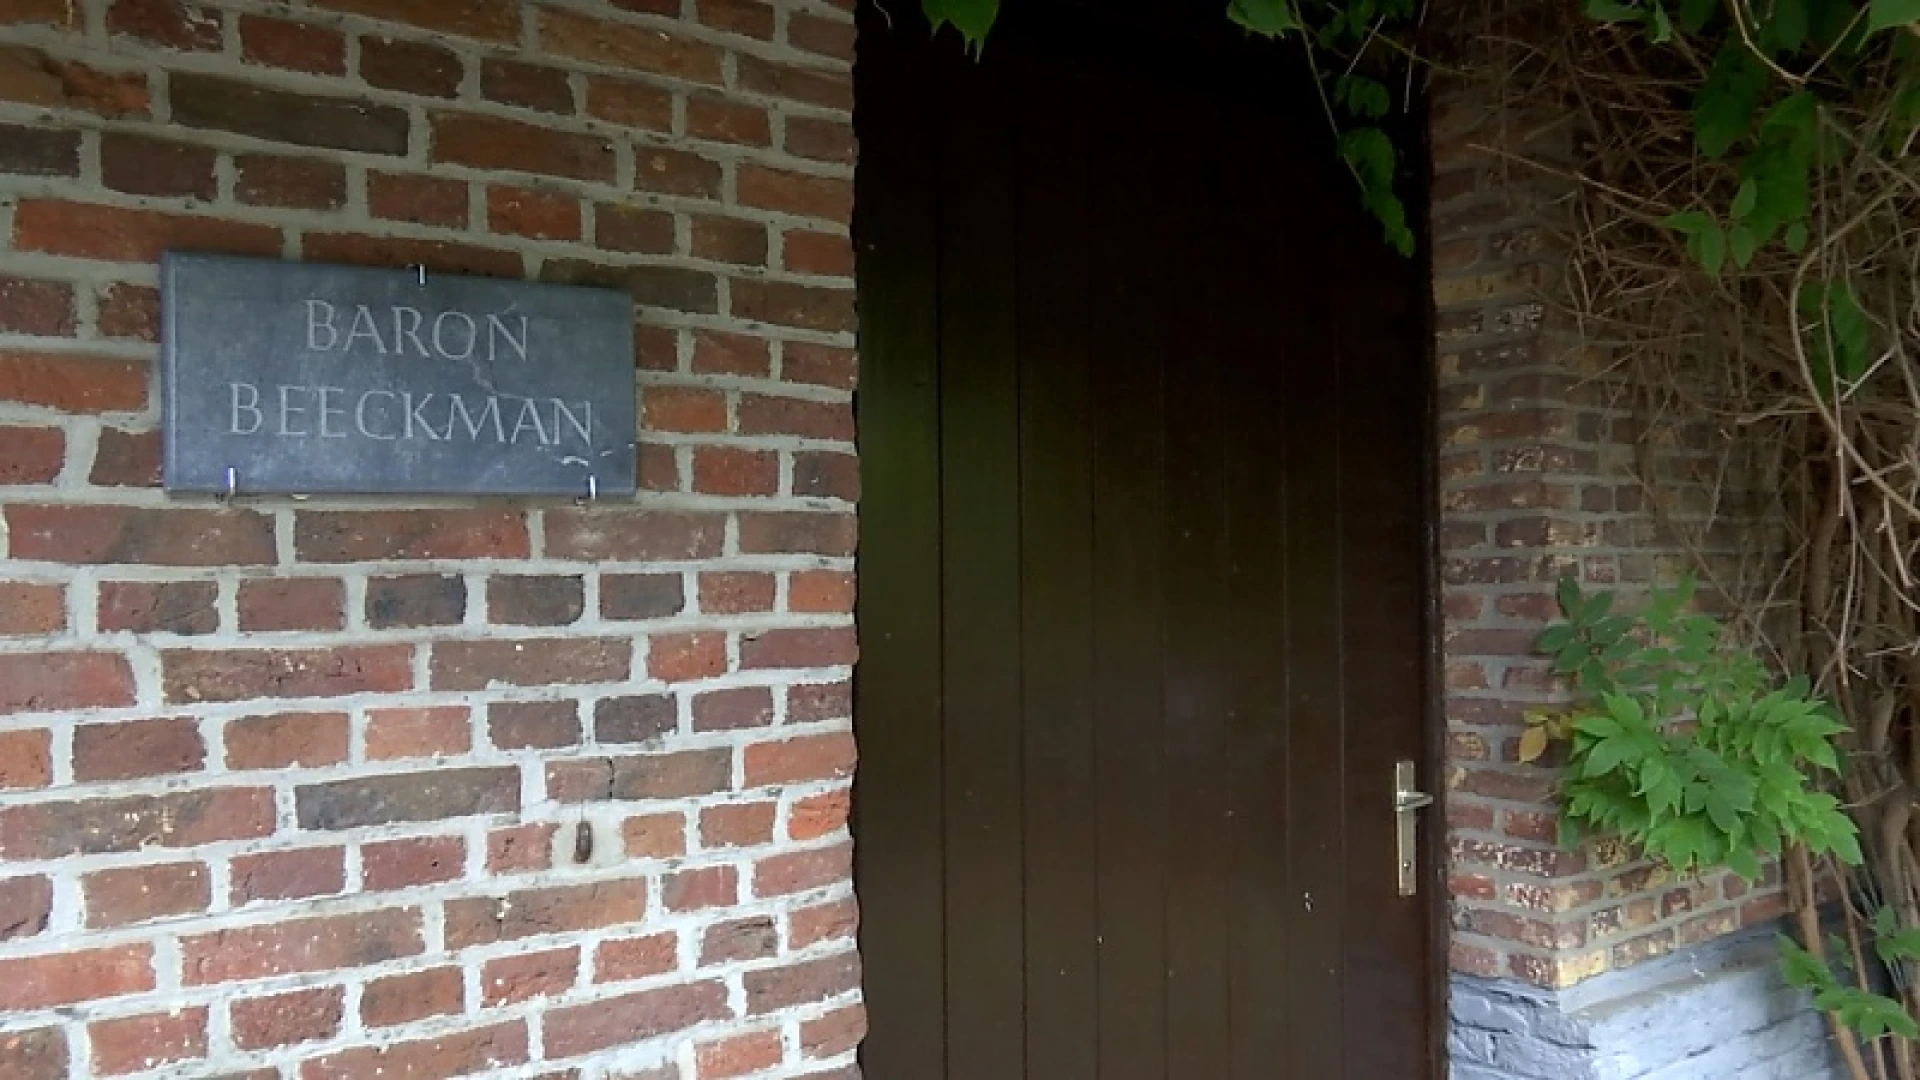 Baron inspiratie voor escape room in Molenstede, kan jij toetreden tot het geheime genootschap?